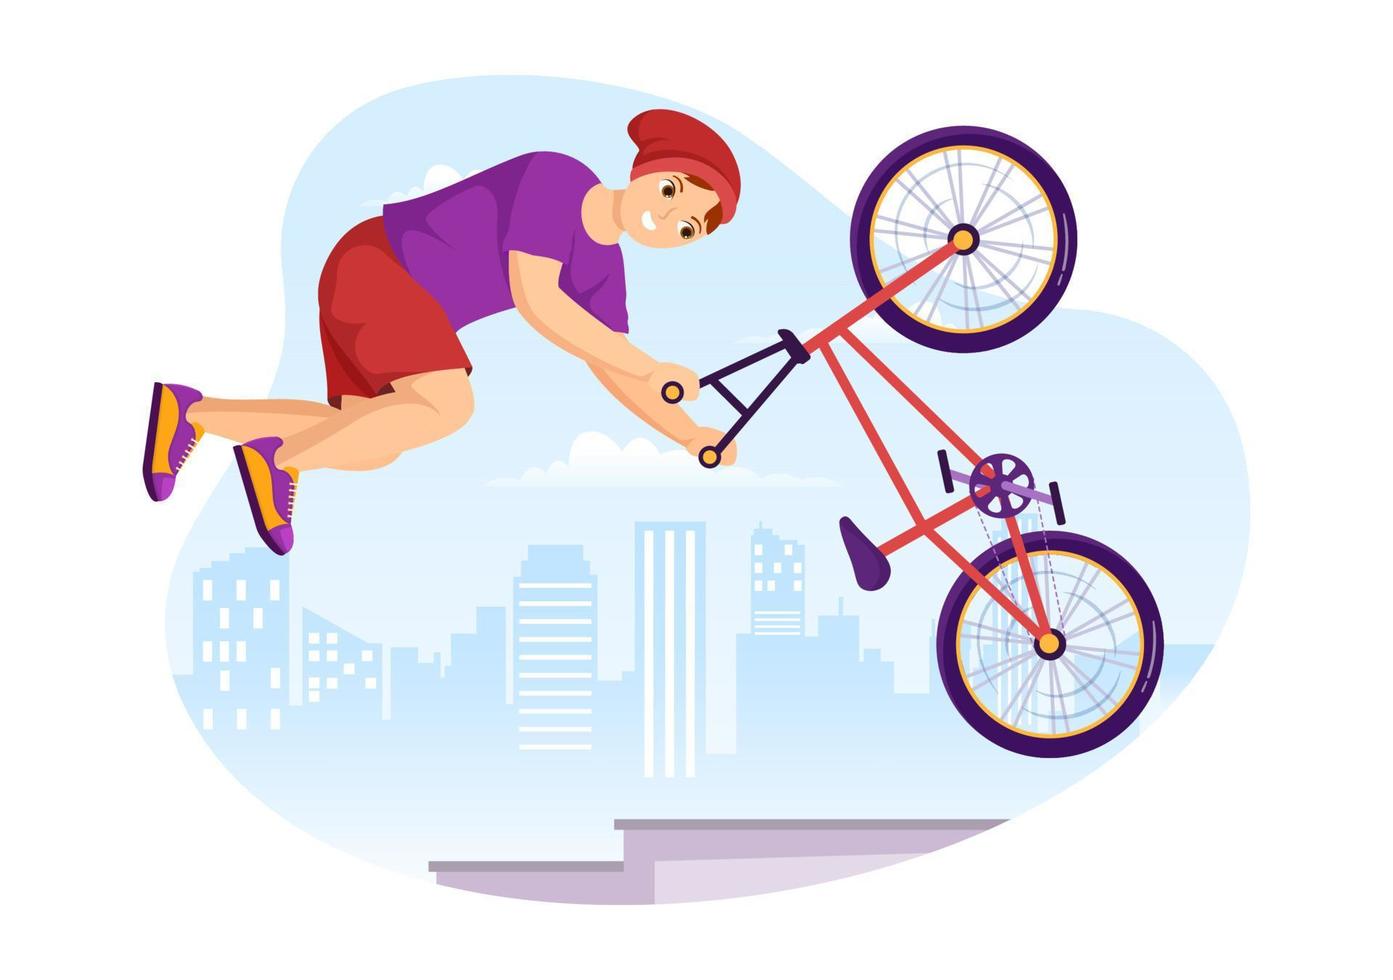 ilustración de deporte de bicicleta bmx con jóvenes en bicicleta para banner web o página de inicio en plantilla de fondo de dibujo a mano de dibujos animados plana vector